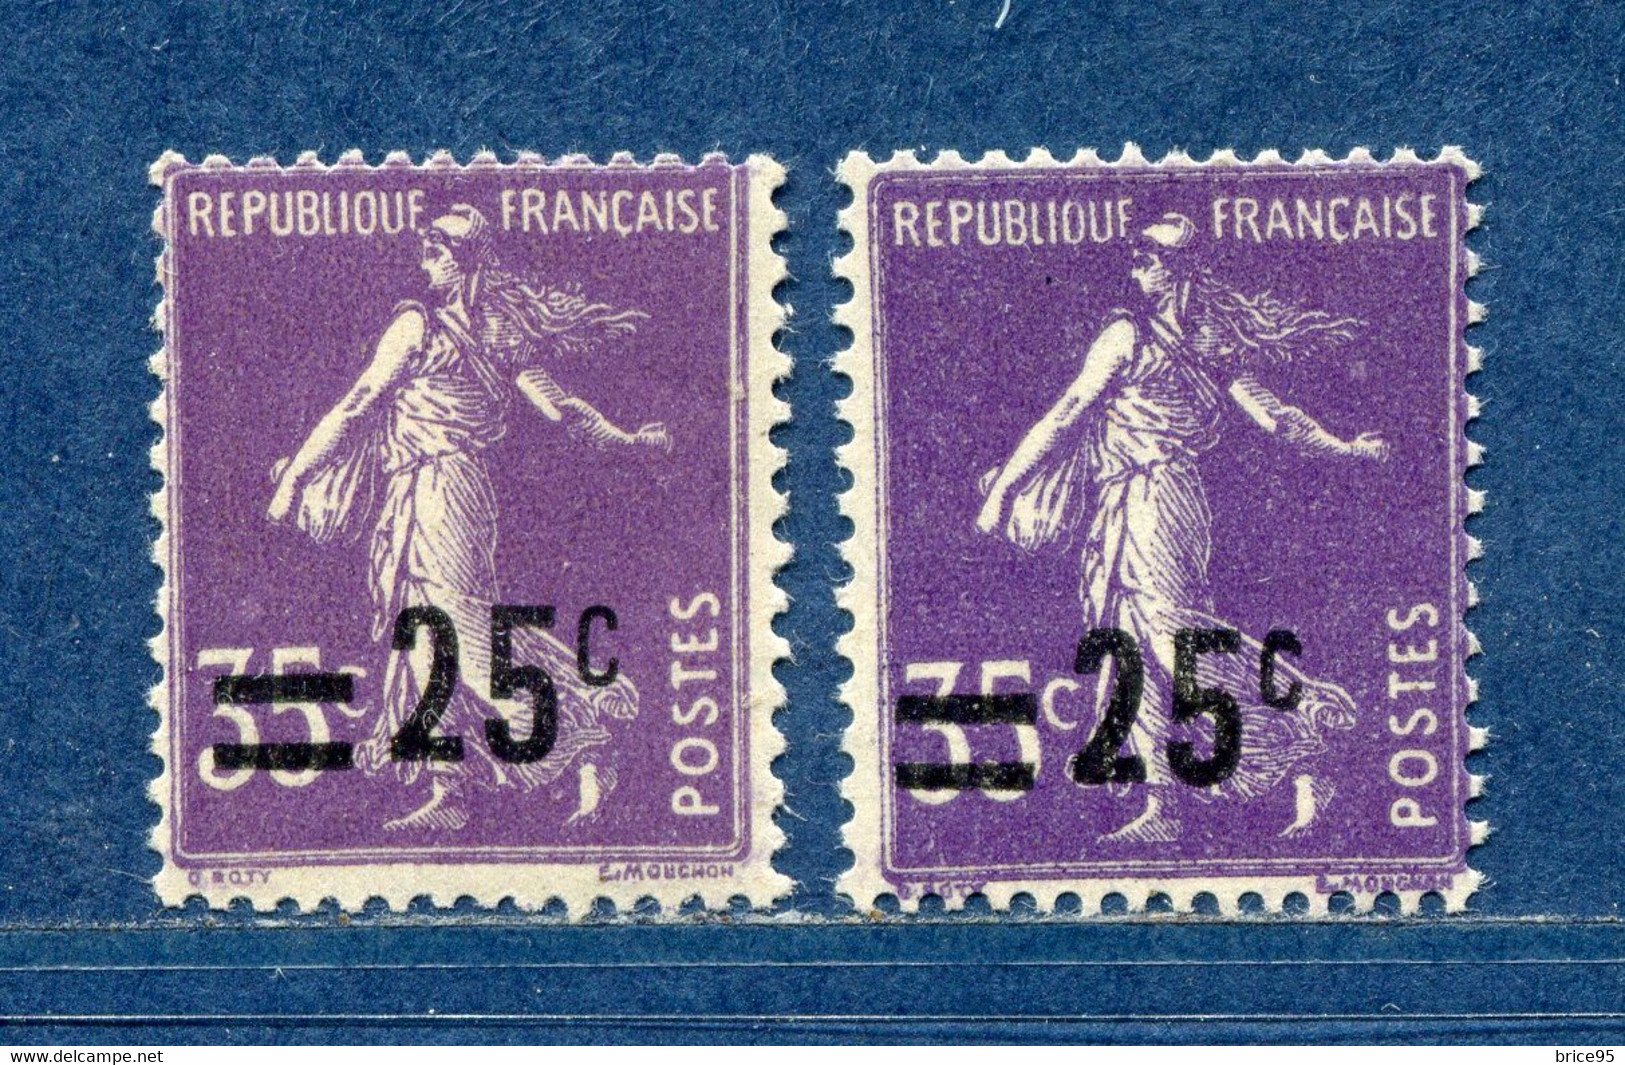 ⭐ France - Variété - YT N° 218 - Couleurs - Pétouilles - Neuf Sans Charnière - 1926 ⭐ - Ungebraucht